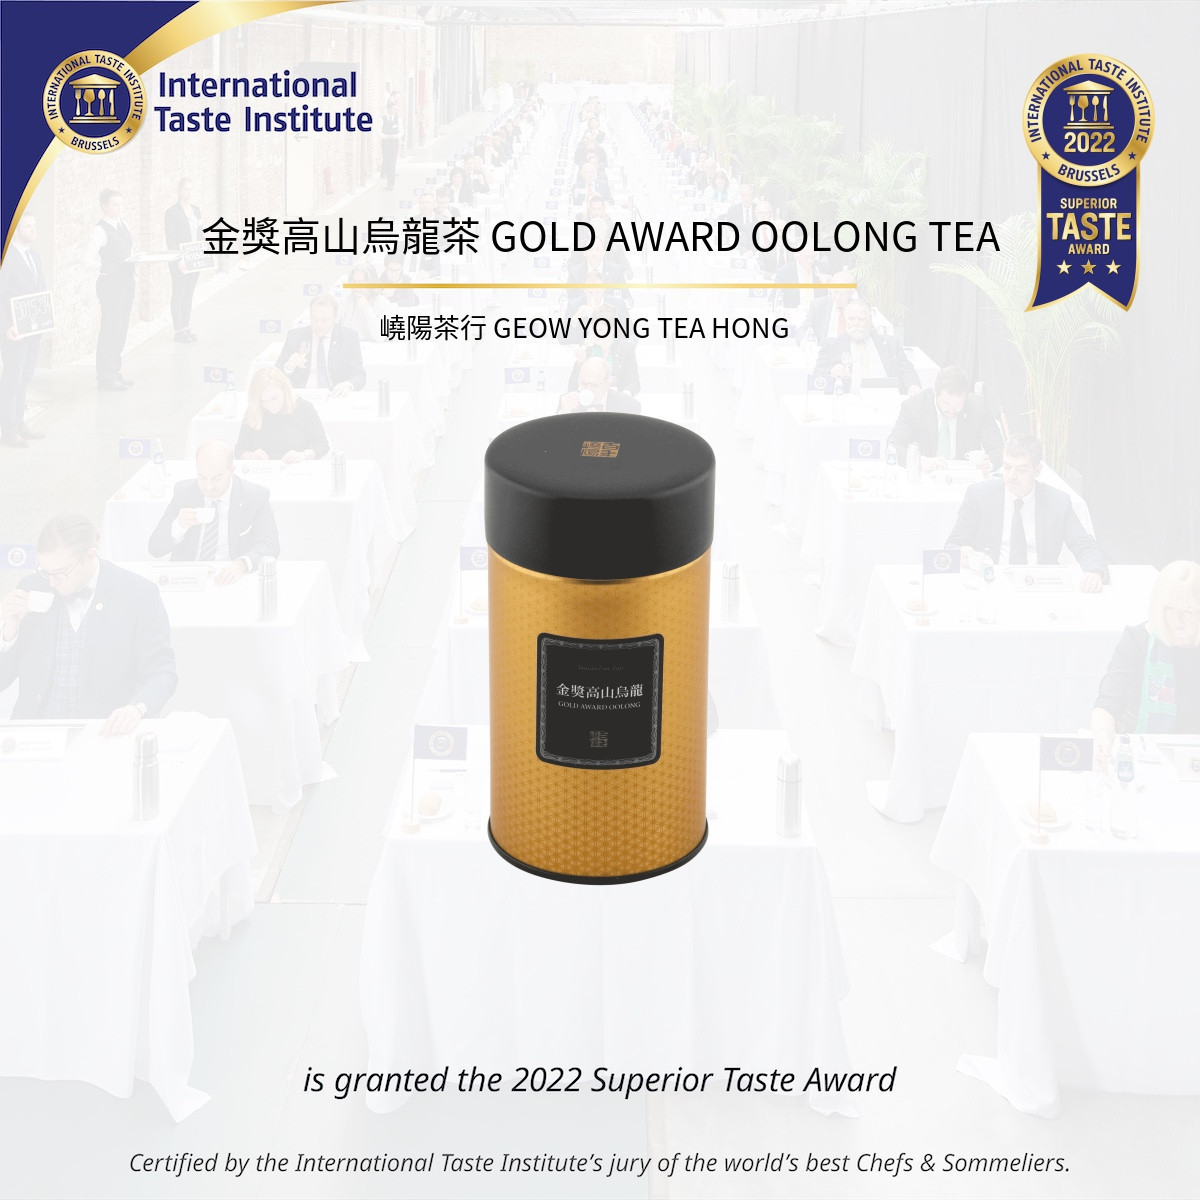 嶢陽茶行的金獎高山烏龍單品茶2022年獲iTQi國際風味獎章三星獎，獲得評審給予最高評價，也讓台灣茶躍升至世界級殿堂。（圖／嶢陽茶行提供）